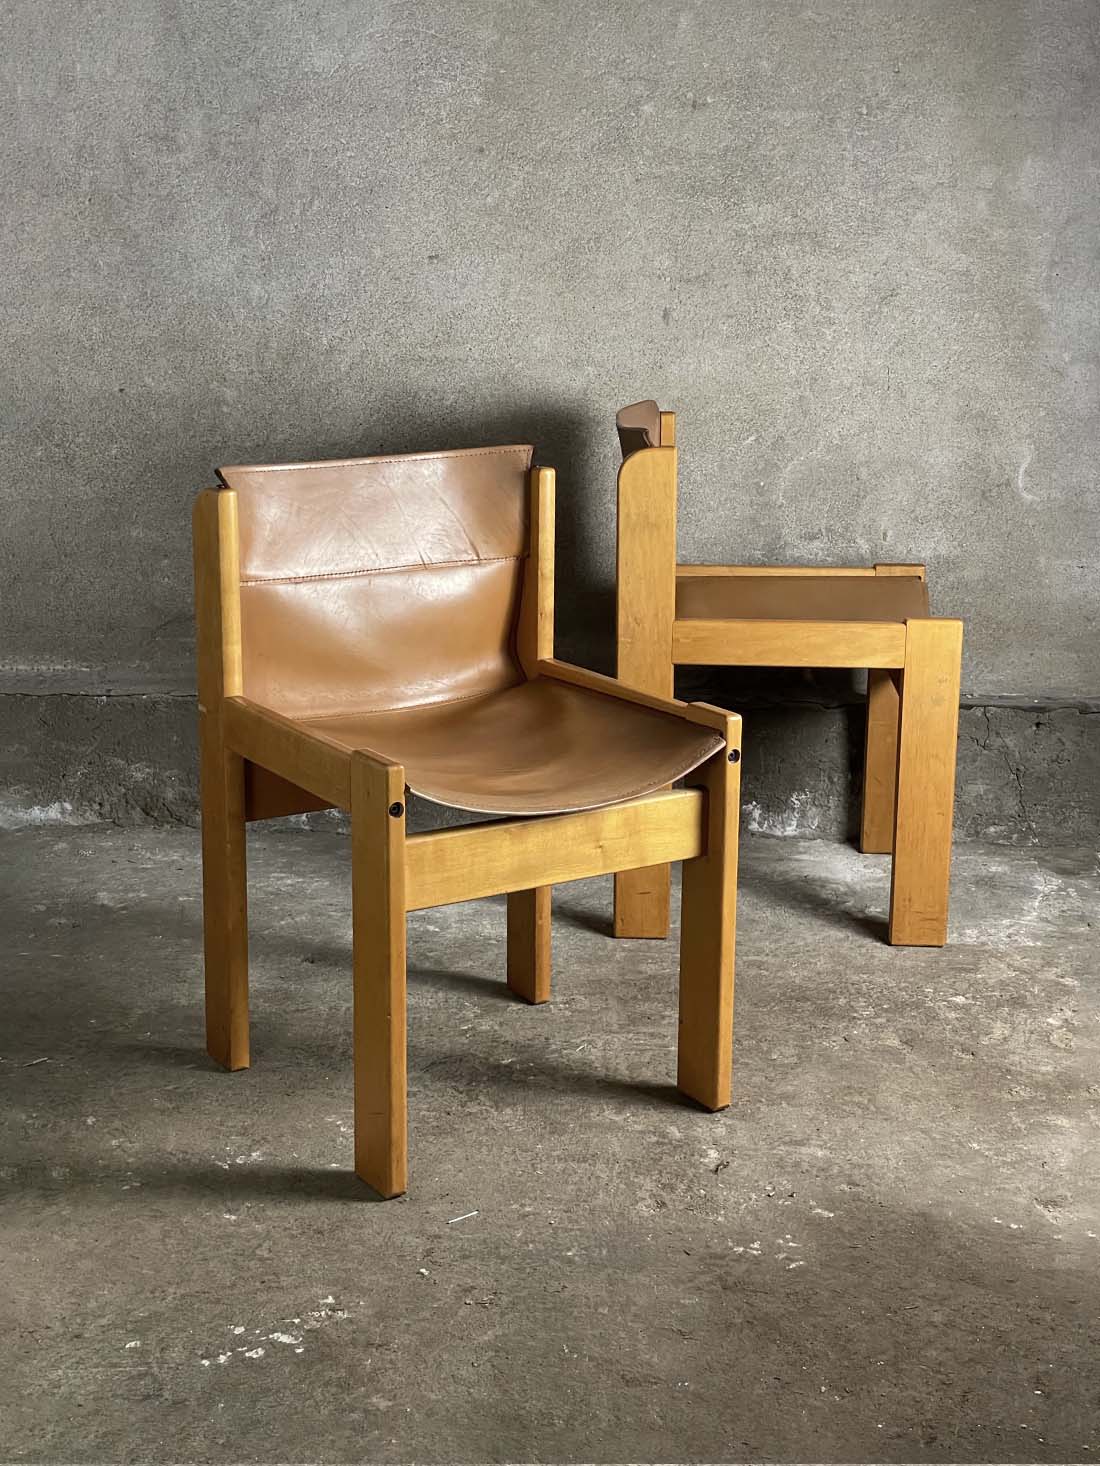 Ibisco Sedie, Włochy krzesła lata 80 vintage krzeslarz